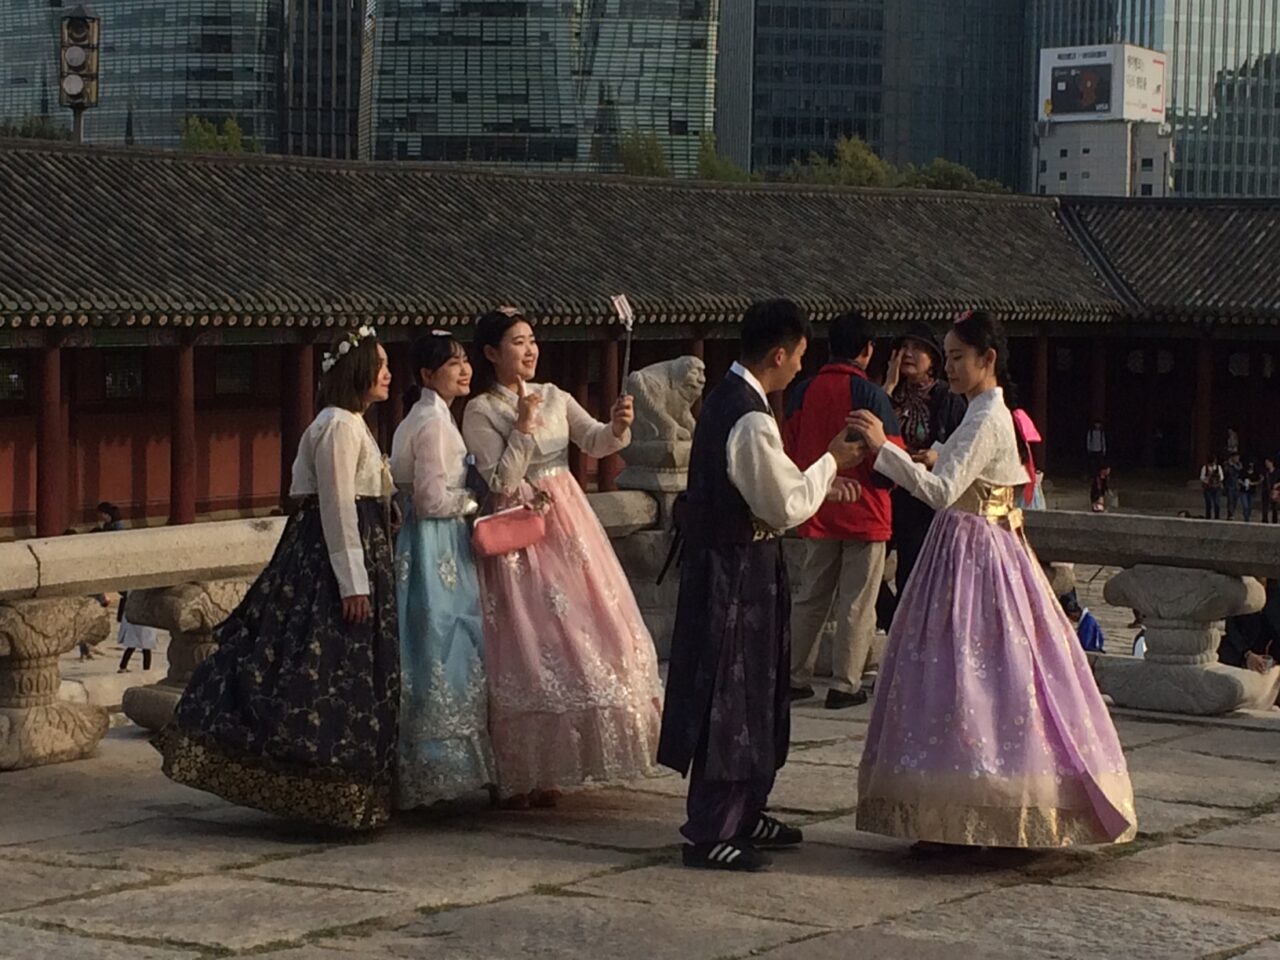 Mennesker med tradisjonelle drakter i Seoul, Sør-Korea